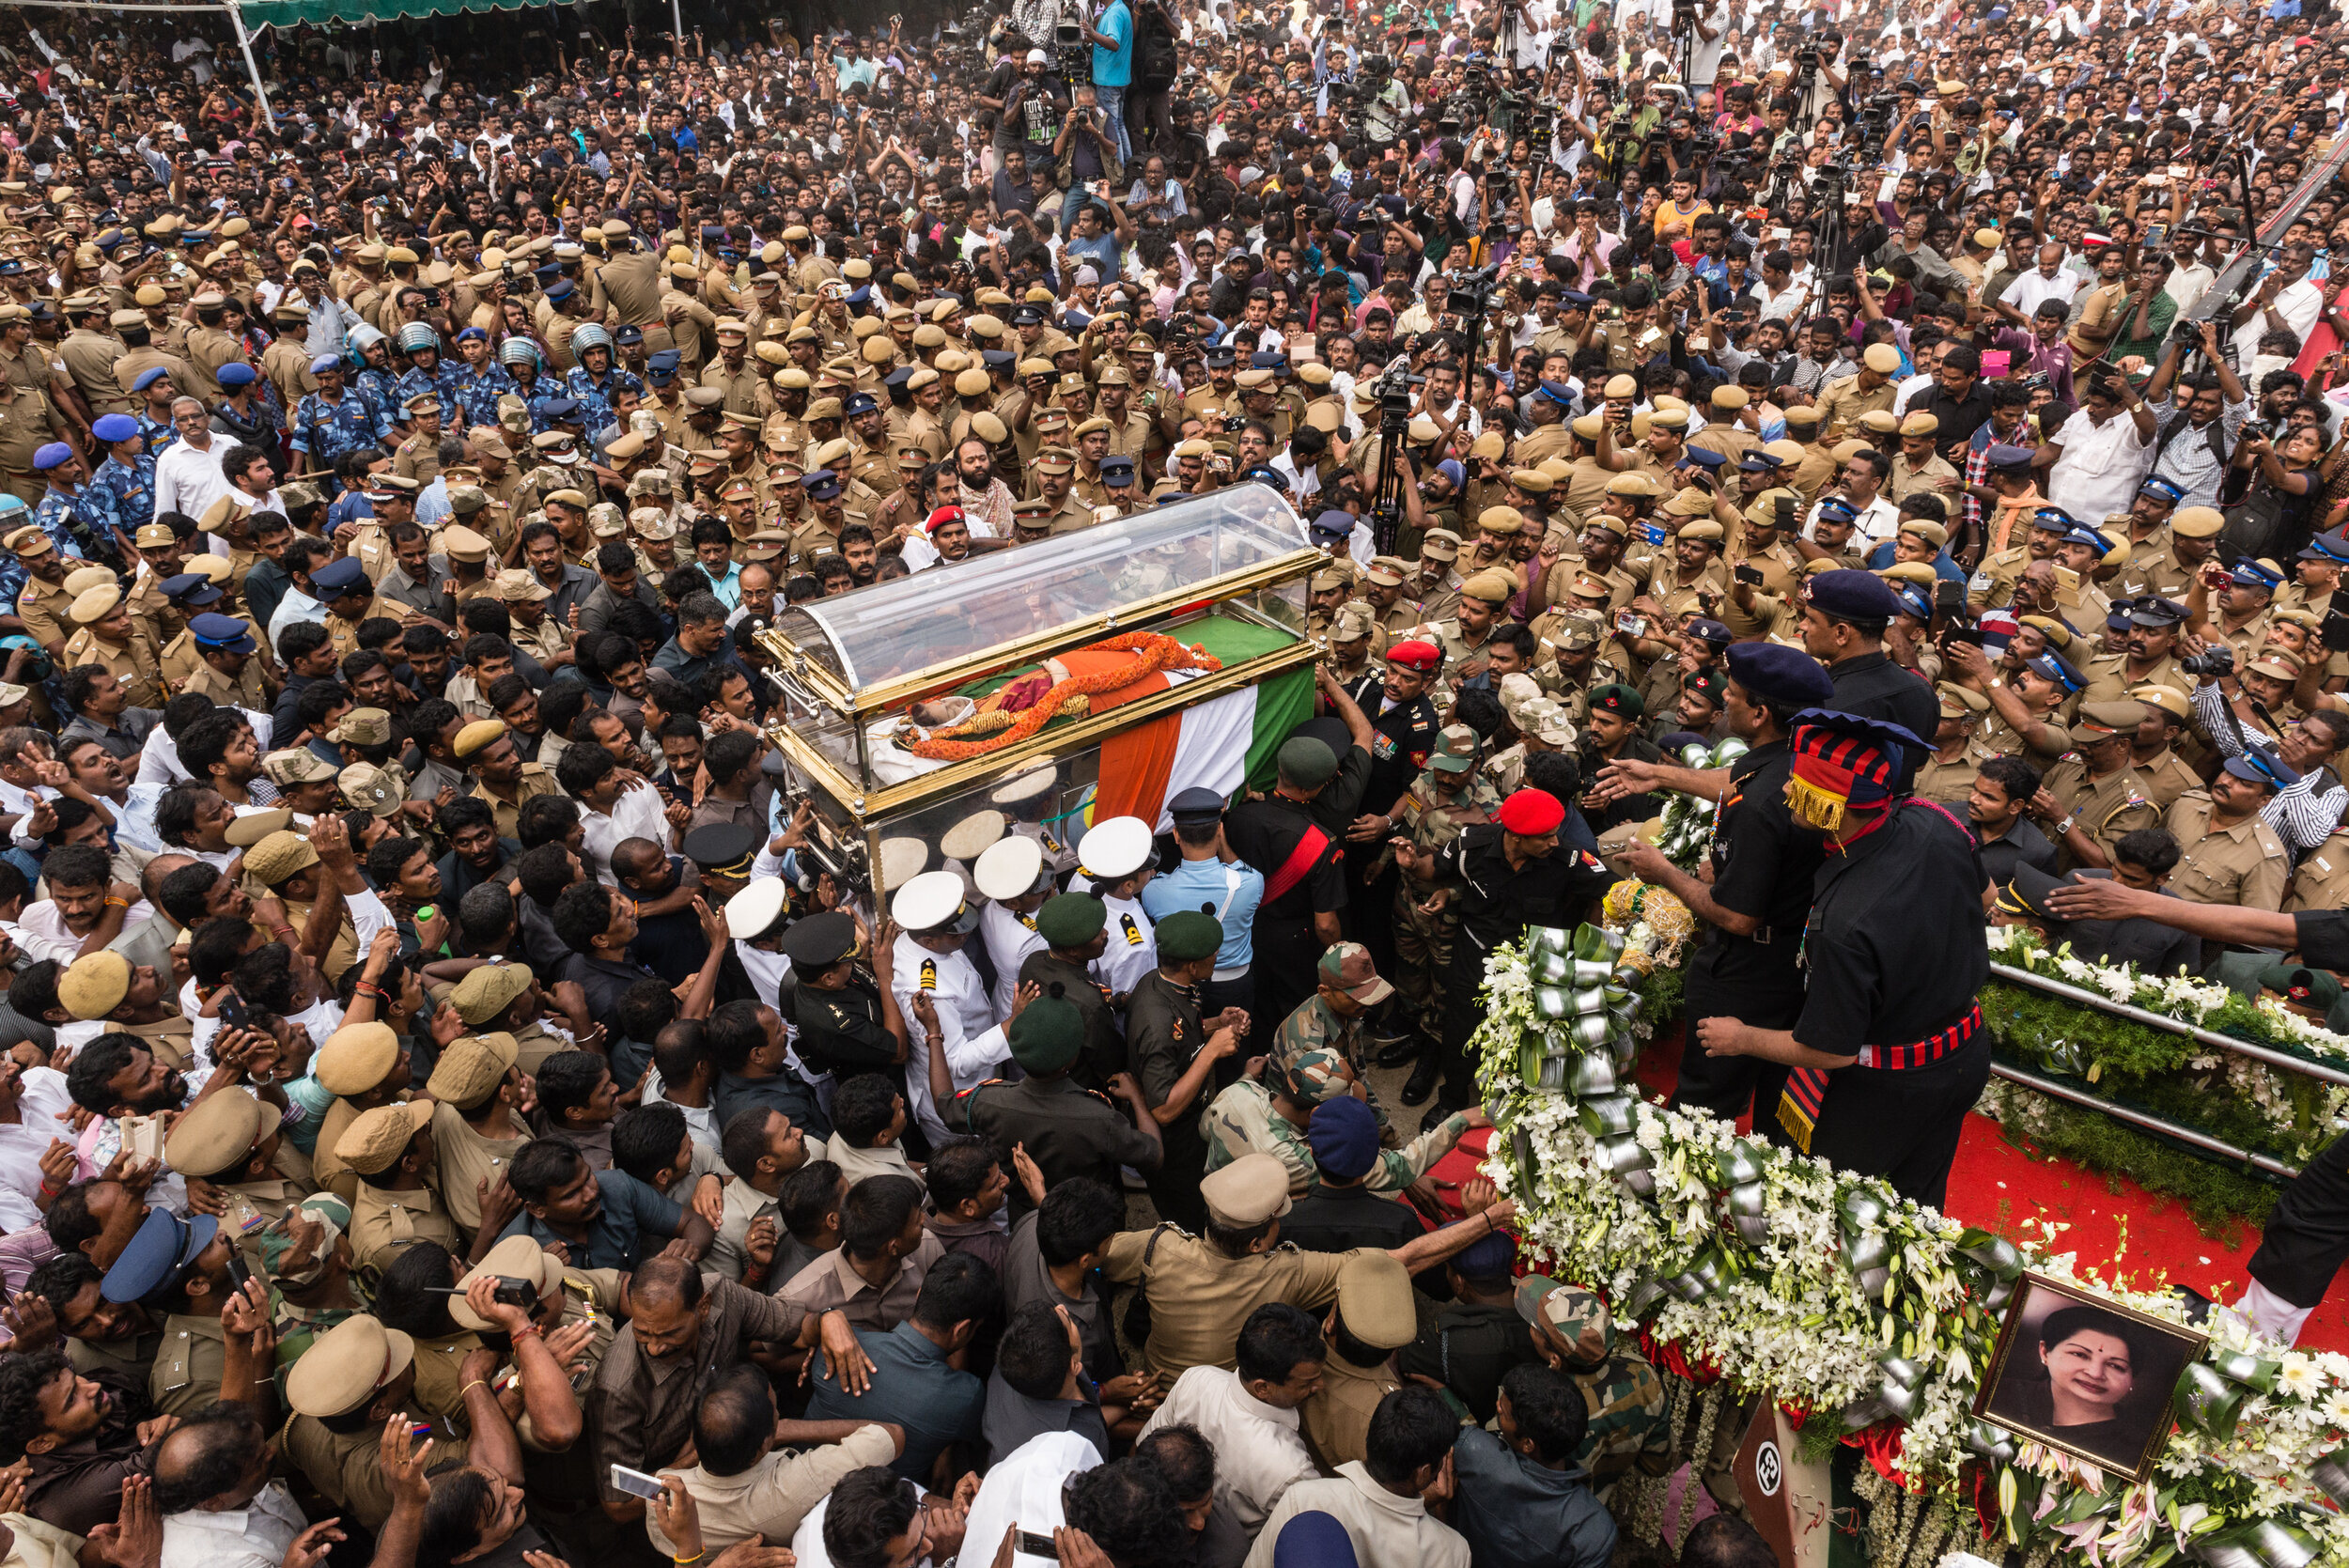 The Death of J. Jayalalithaa. 